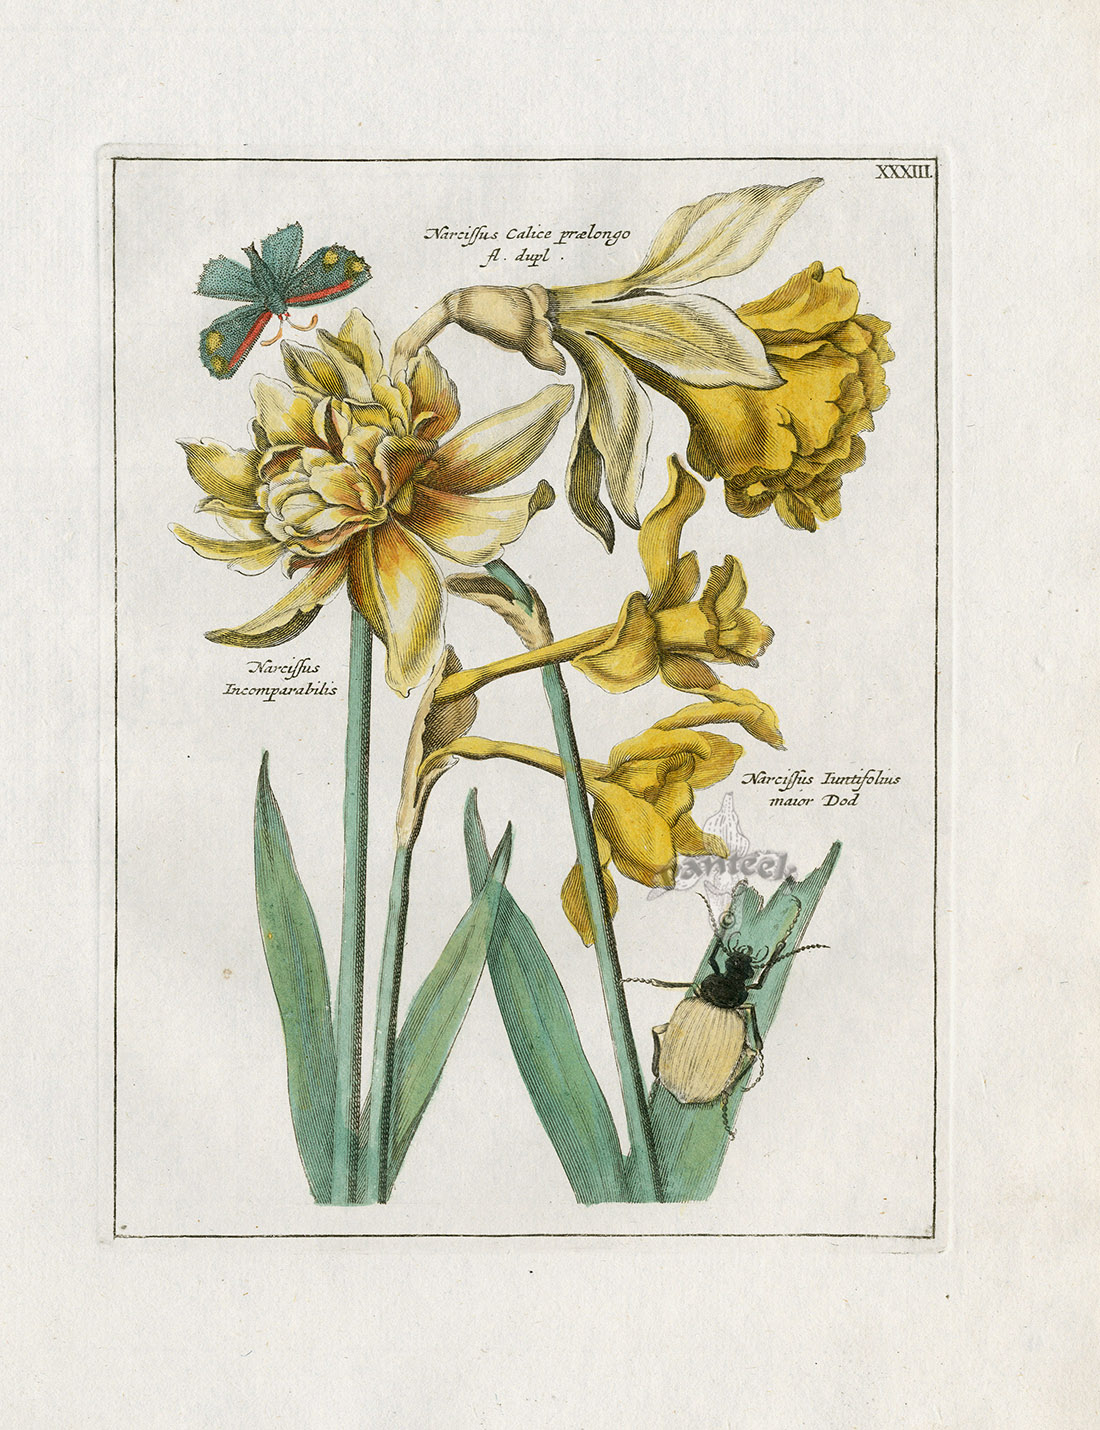 Narcissus incomparabilis, Calice praelongo, Juntifolius major, Beetle ...